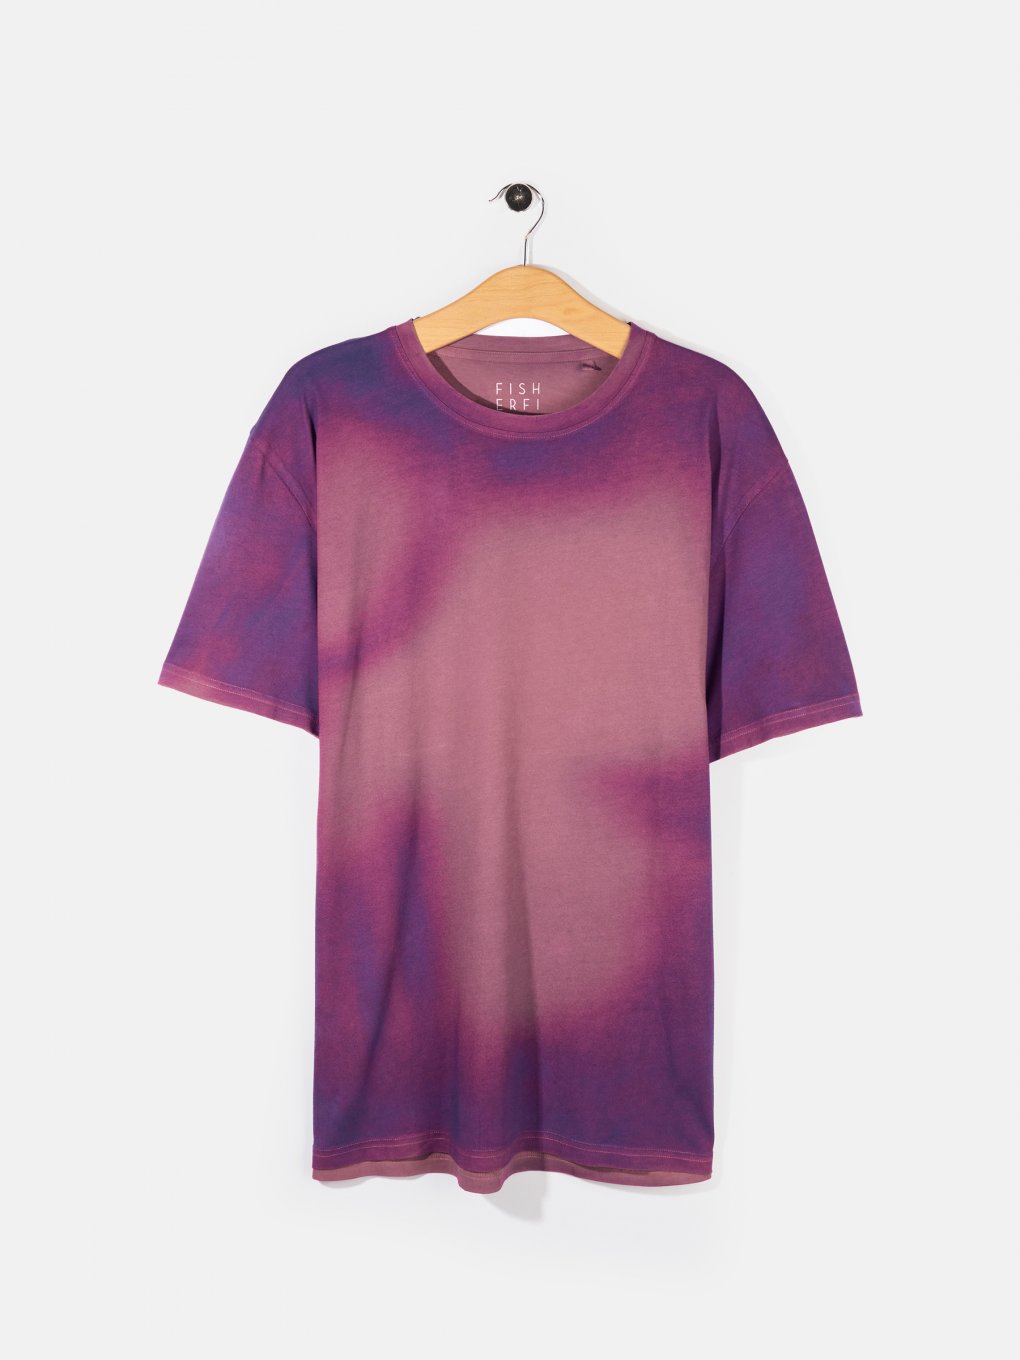 Tie-dye effect cotton t-shirt